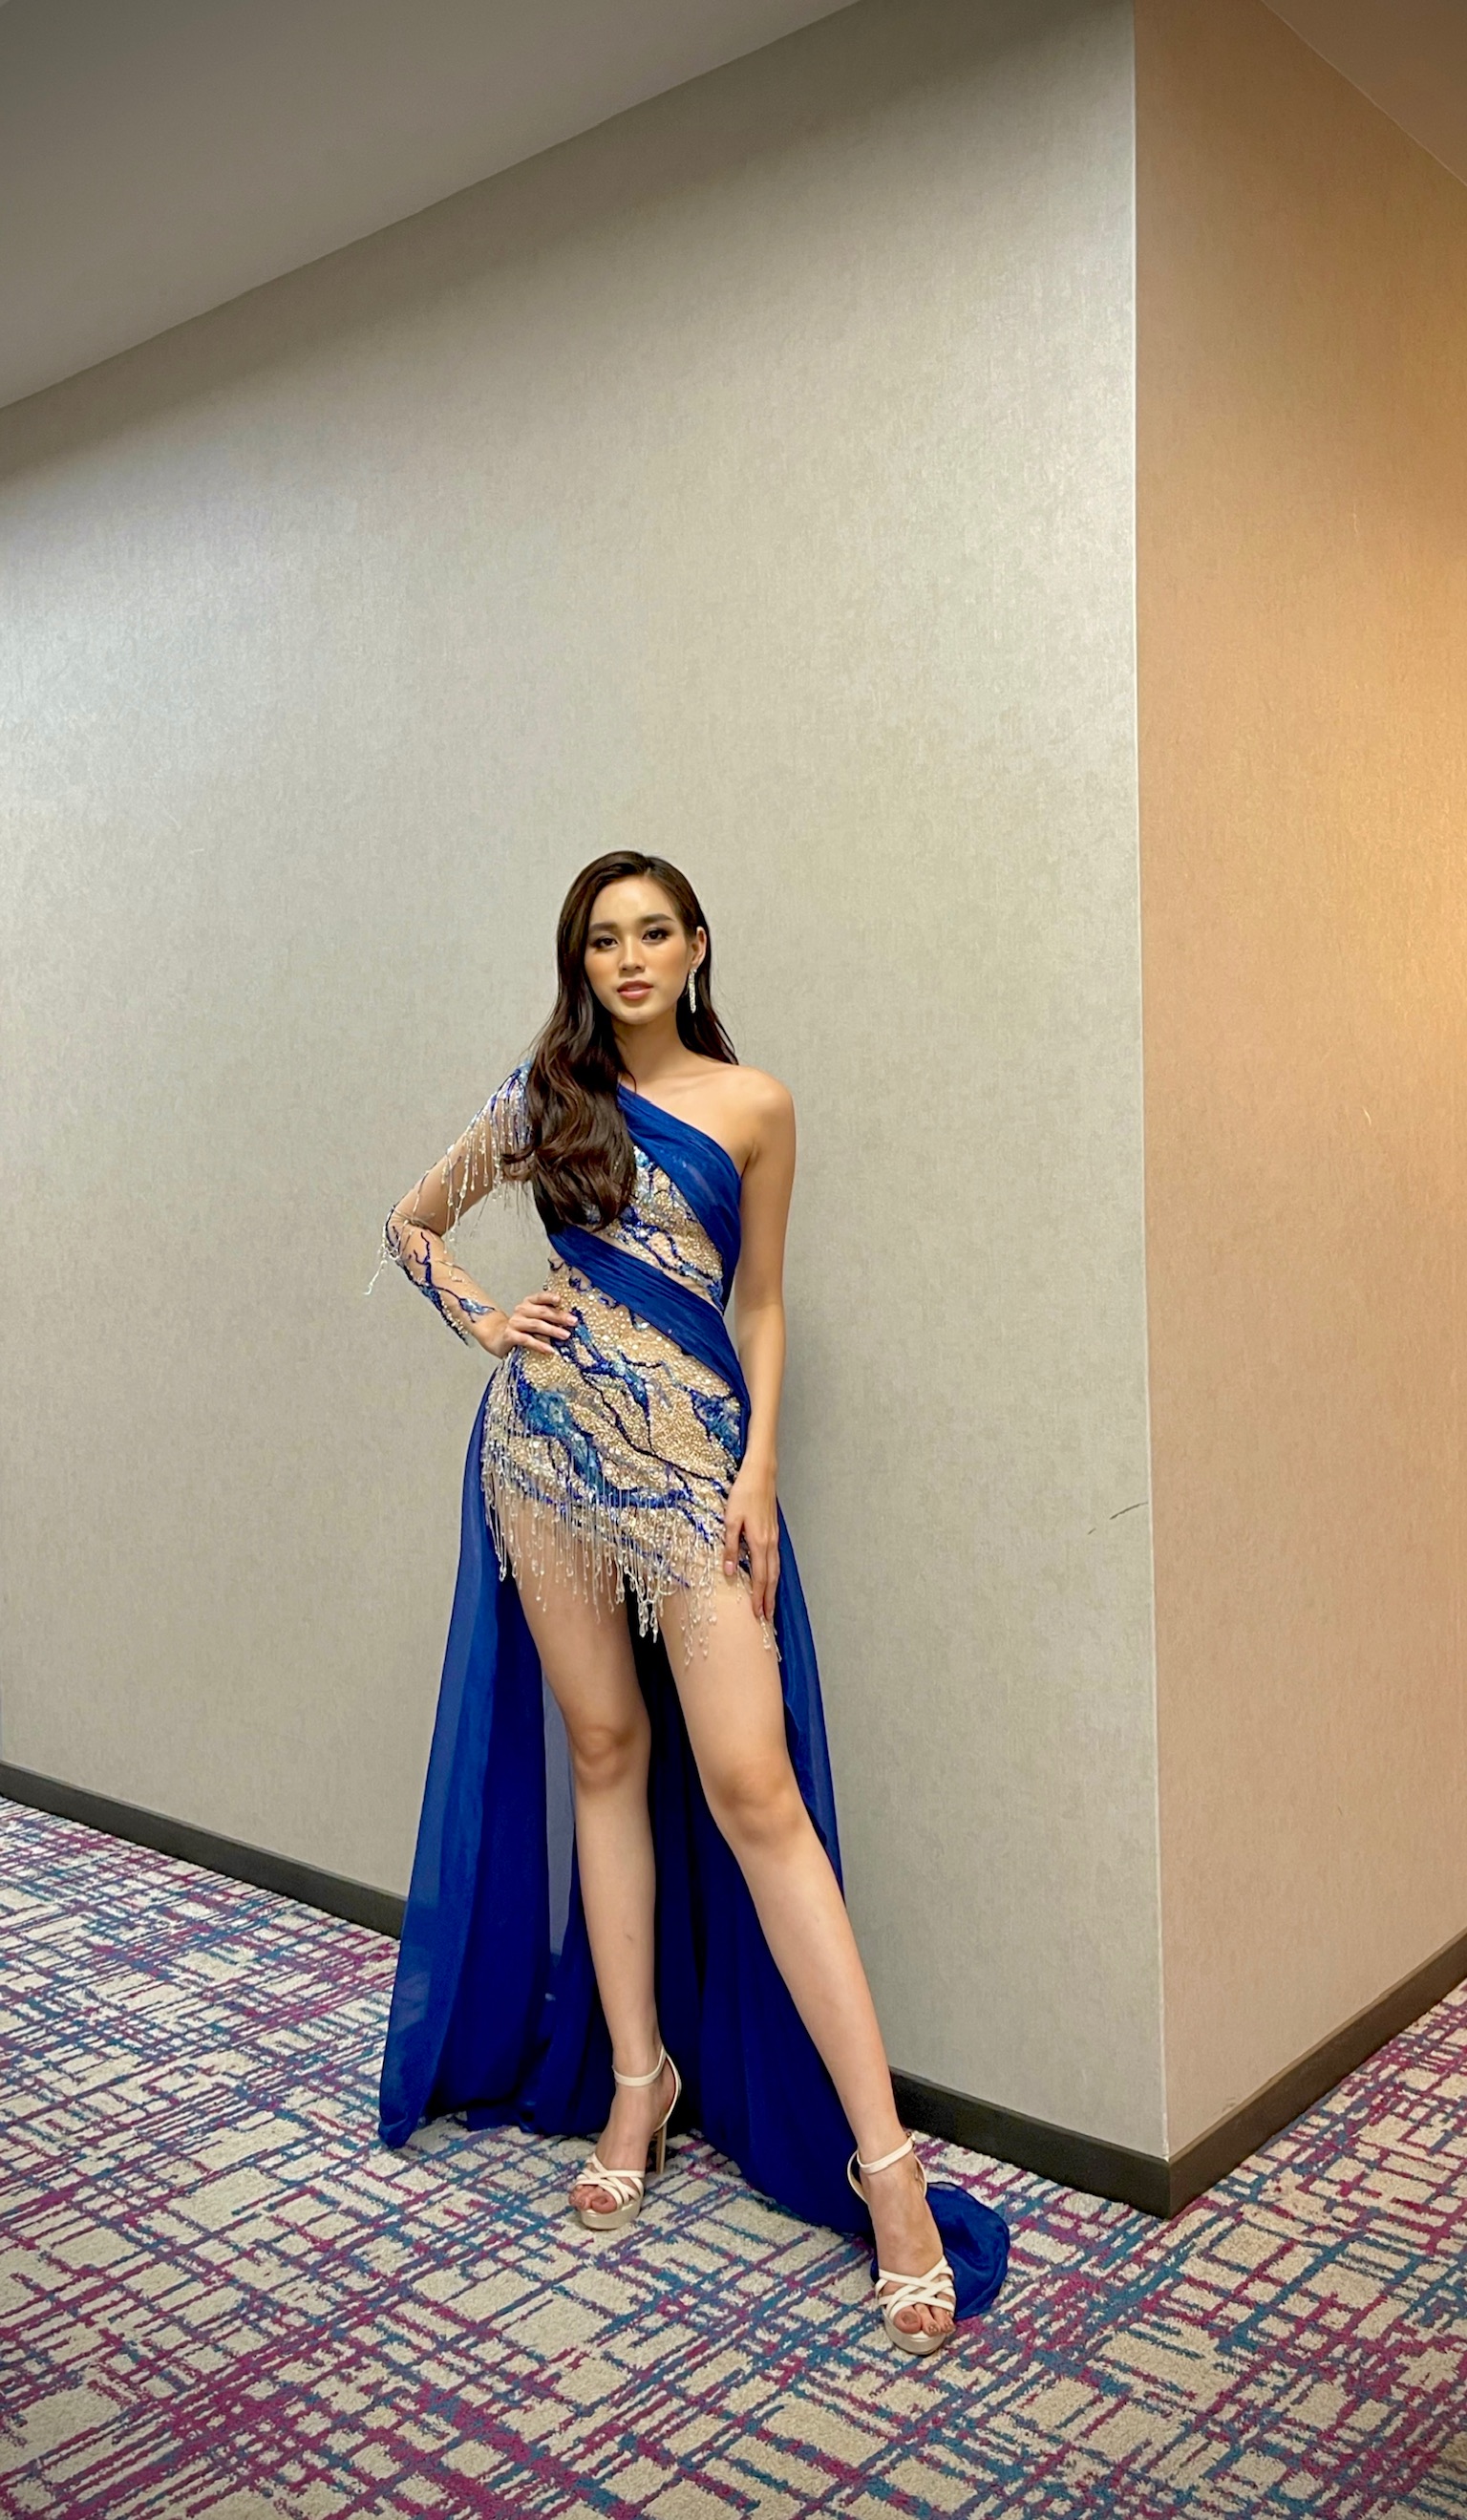 Đỗ Hà vượt 123 thí sinh, giành vị trí trong Top 13 phần thi Top Model của Miss World 2021 - ảnh 1